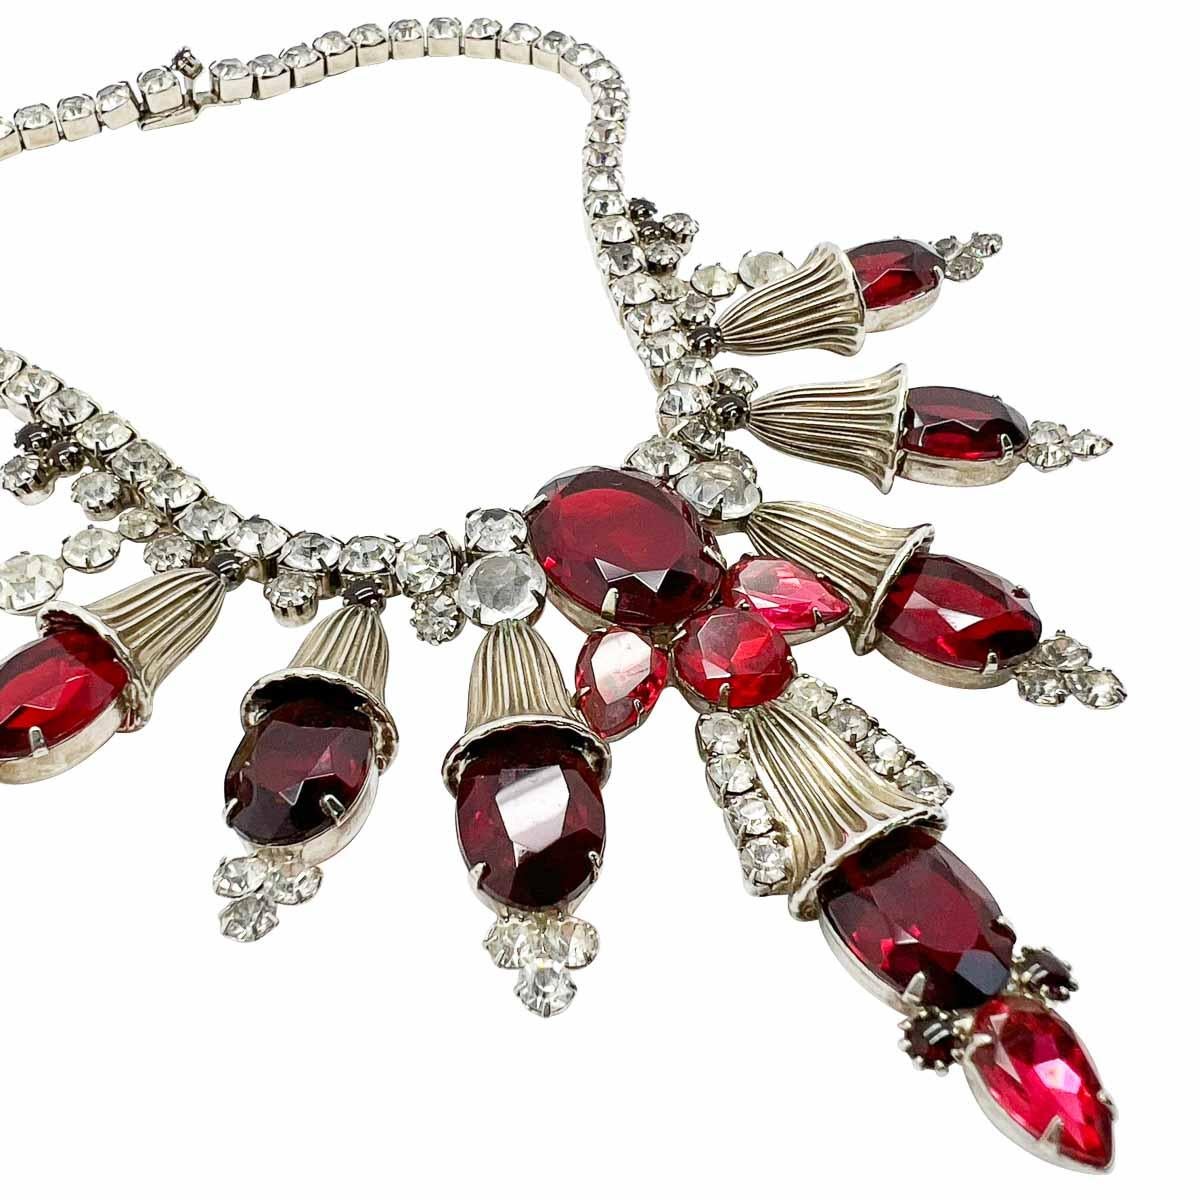 Ein prächtiges Vintage Ruby Statement Collar. Das raffinierte Design umfasst große rubinrote Glassteine inmitten großer Metallmotive und überlässt kein Detail dem Zufall. Bis hin zu den winzigen rubinroten Glascabochons in der Schließe und in der